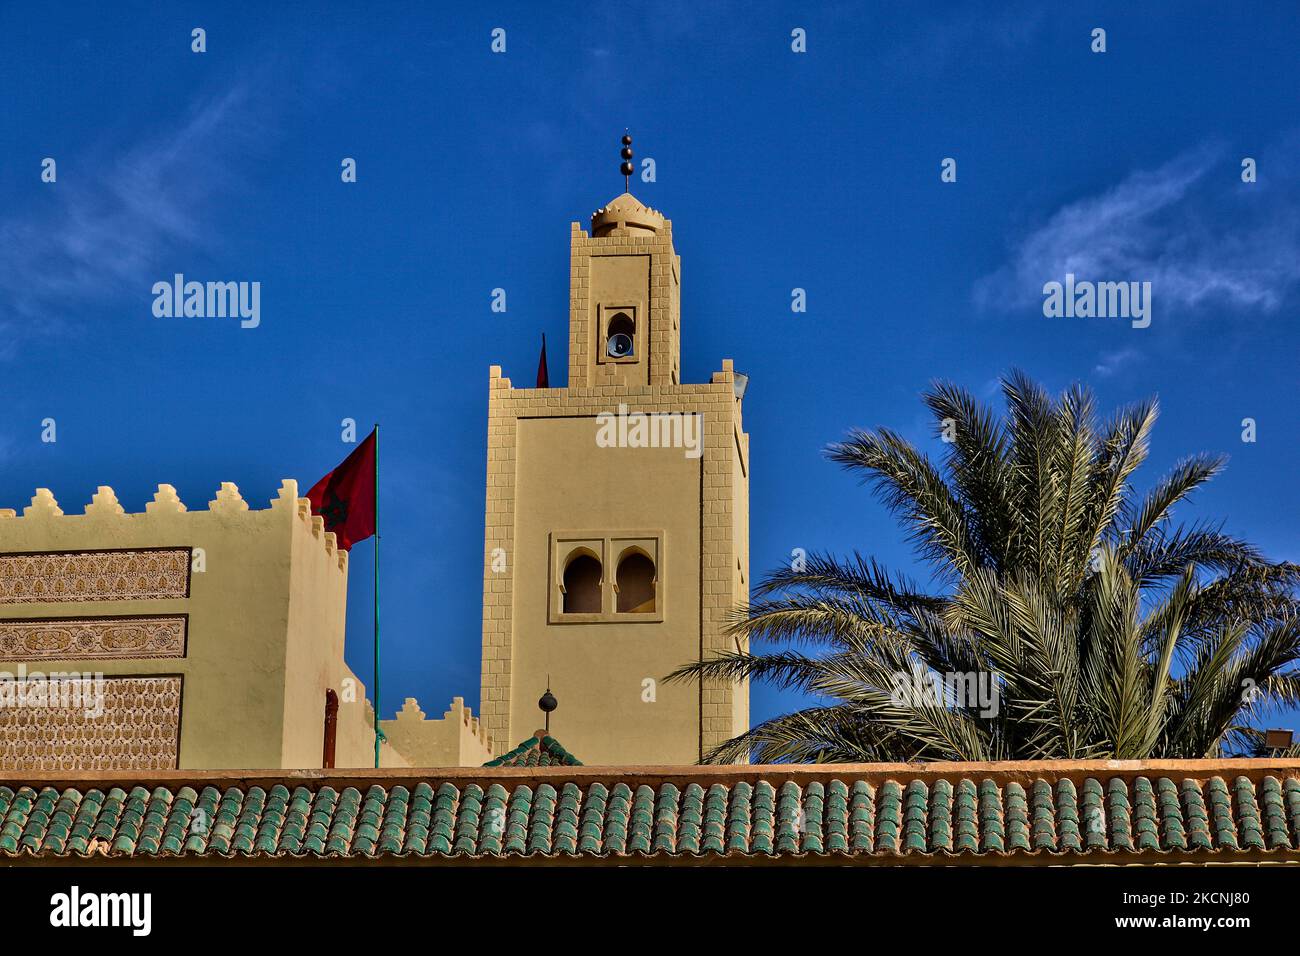 Mausolée de Moulay Ali Cherif à Rissani, Maroc, Afrique. C'est le dernier lieu de repos du fondateur de la dynastie marocaine (actuelle) Alaouite et de plusieurs de ses fils. Alors que la porte et la cour élaborées sont ouvertes à tous, le mausolée lui-même et la mosquée qui y est rattachée sont hors limites pour les non-musulmans. (Photo de Creative Touch Imaging Ltd./NurPhoto) Banque D'Images